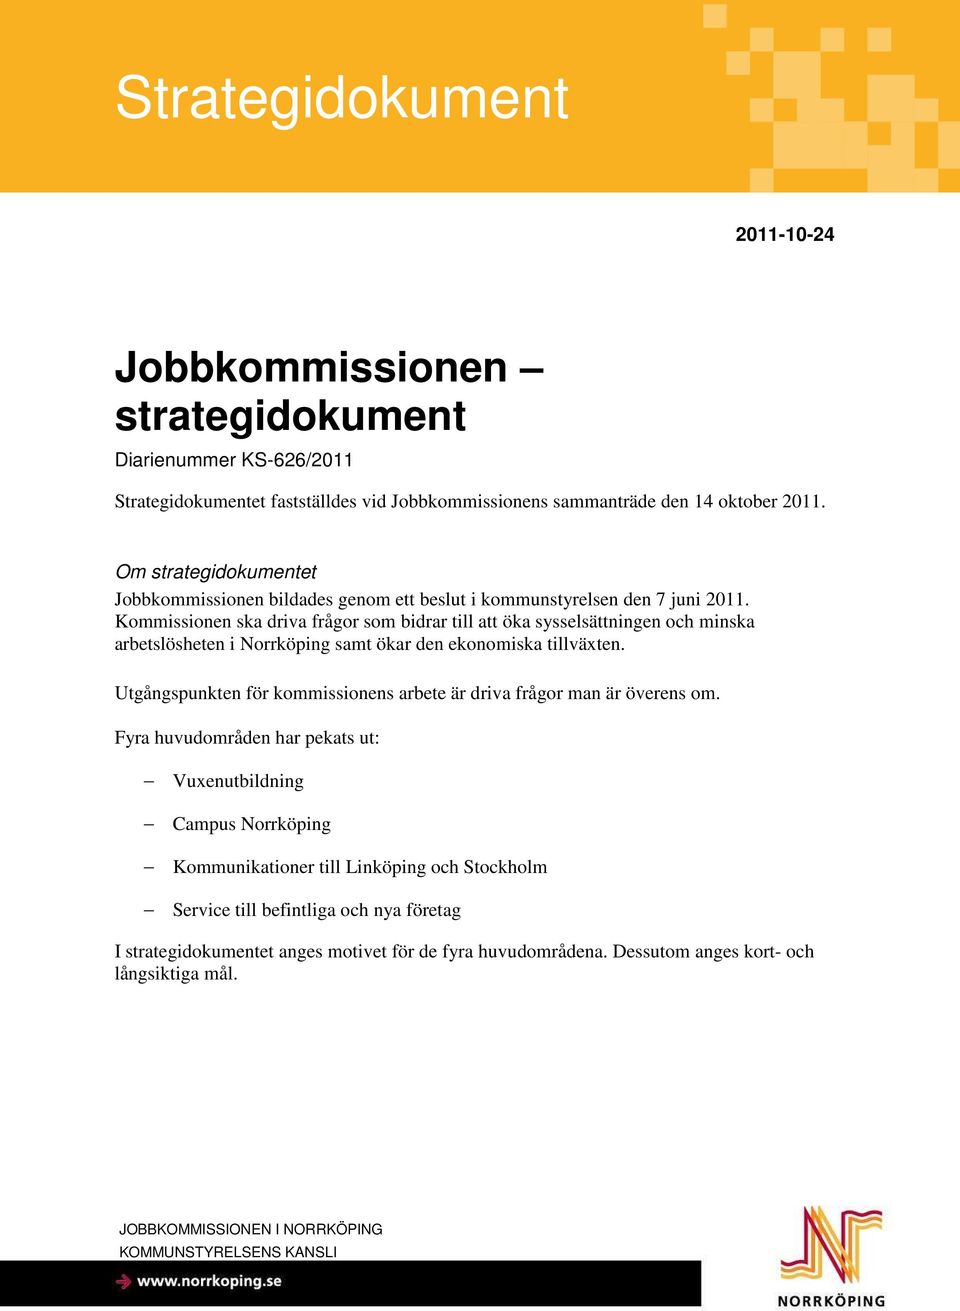 Kommissionen ska driva frågor som bidrar till att öka sysselsättningen och minska arbetslösheten i Norrköping samt ökar den ekonomiska tillväxten.